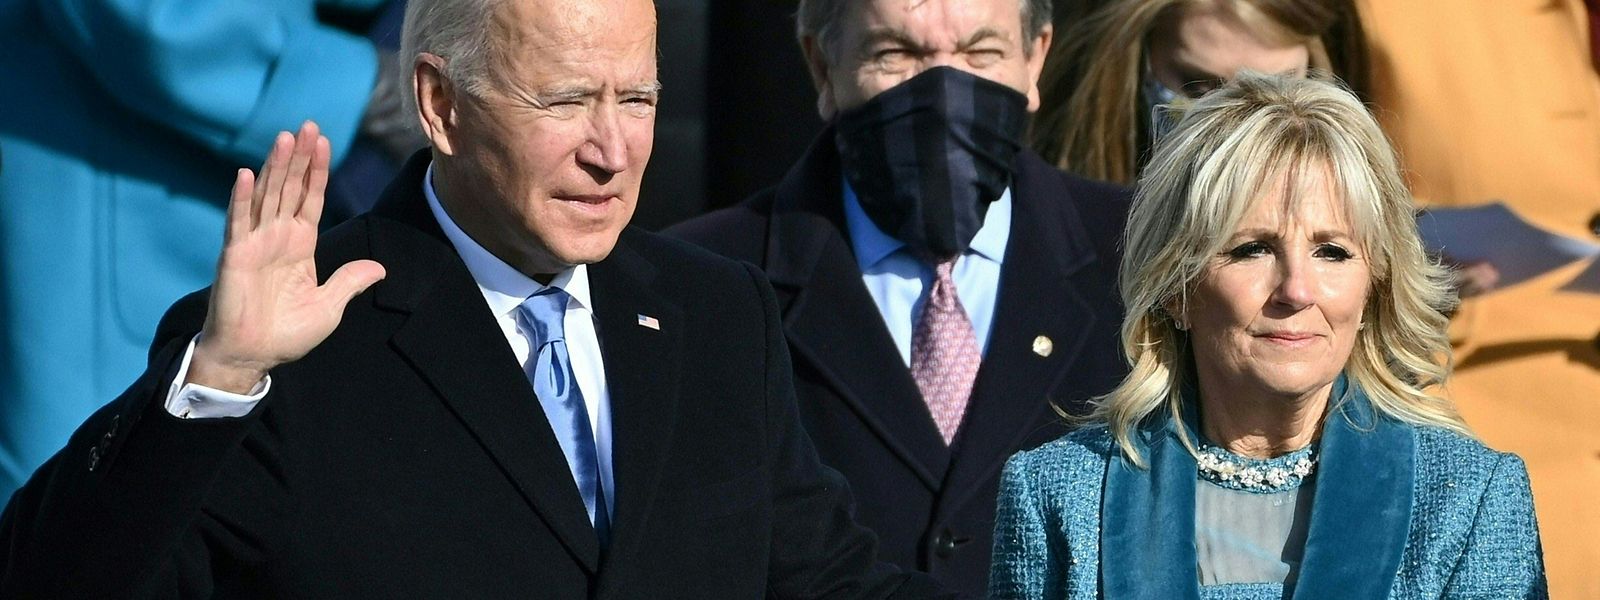 Joe Biden wurde im Januar als US-Präsident vereidigt. Ehefrau Jill steht ihm seit 1977 zur Seite.